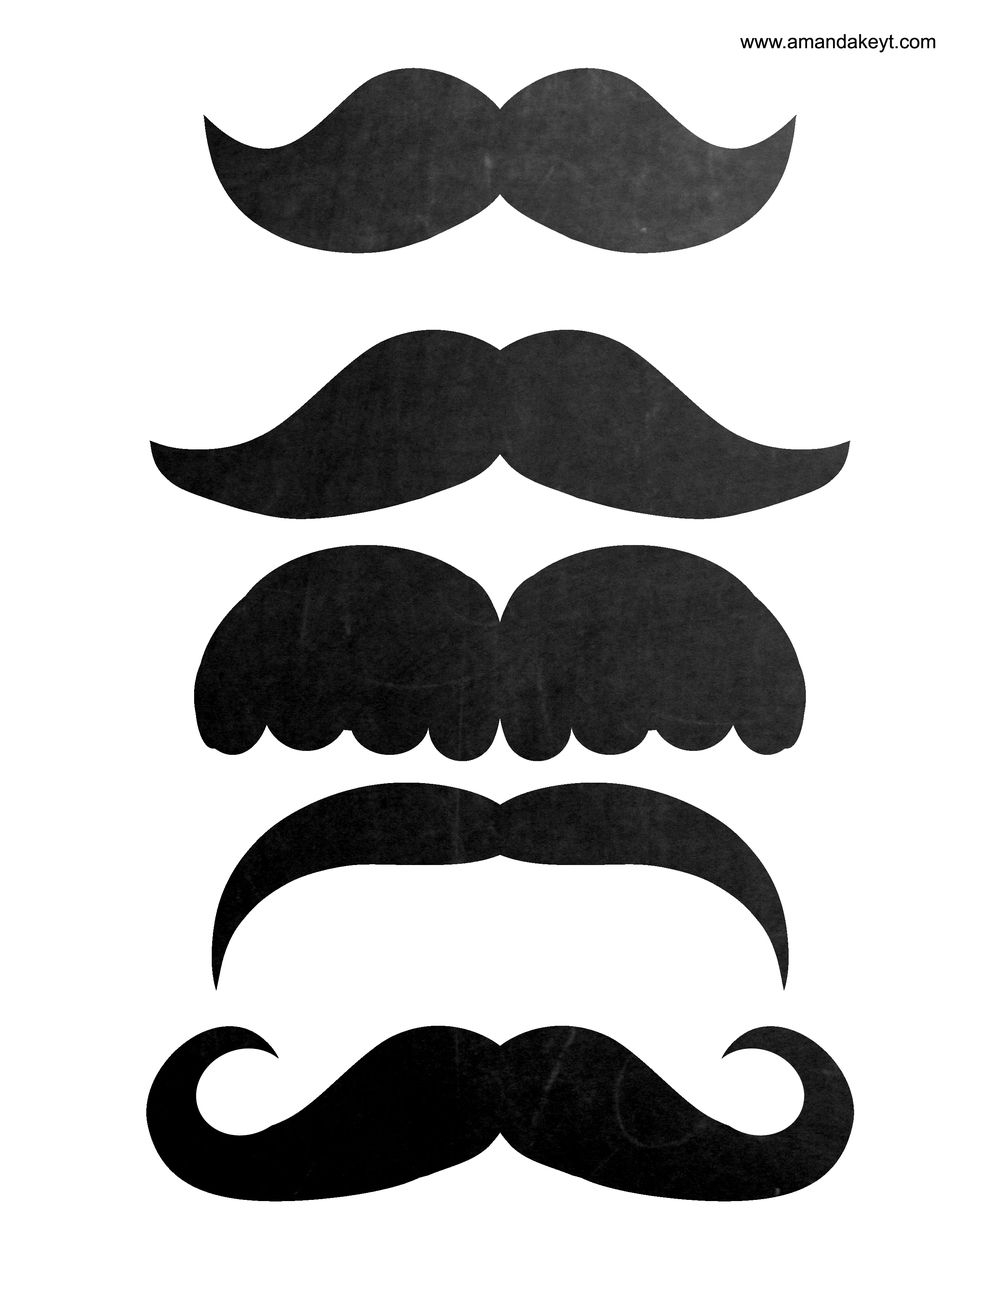 Шкиперская борода: особенности, фото, как сделать форму